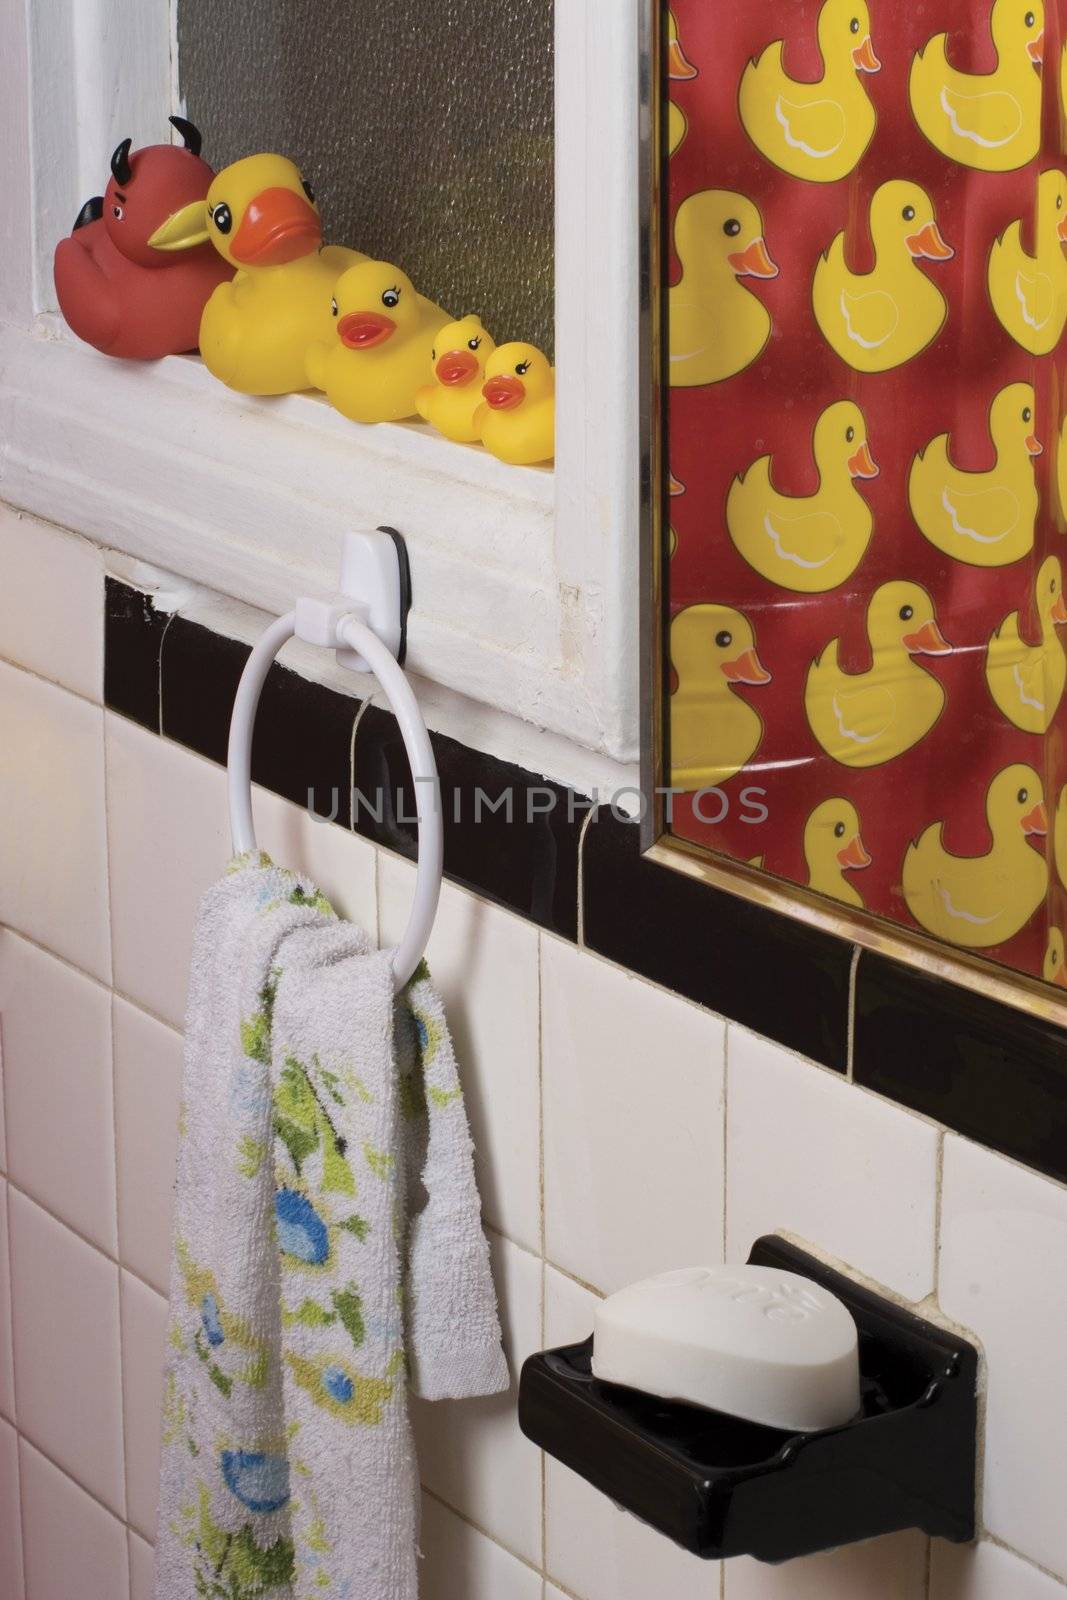 Bathroom rubber ducky by mypstudio